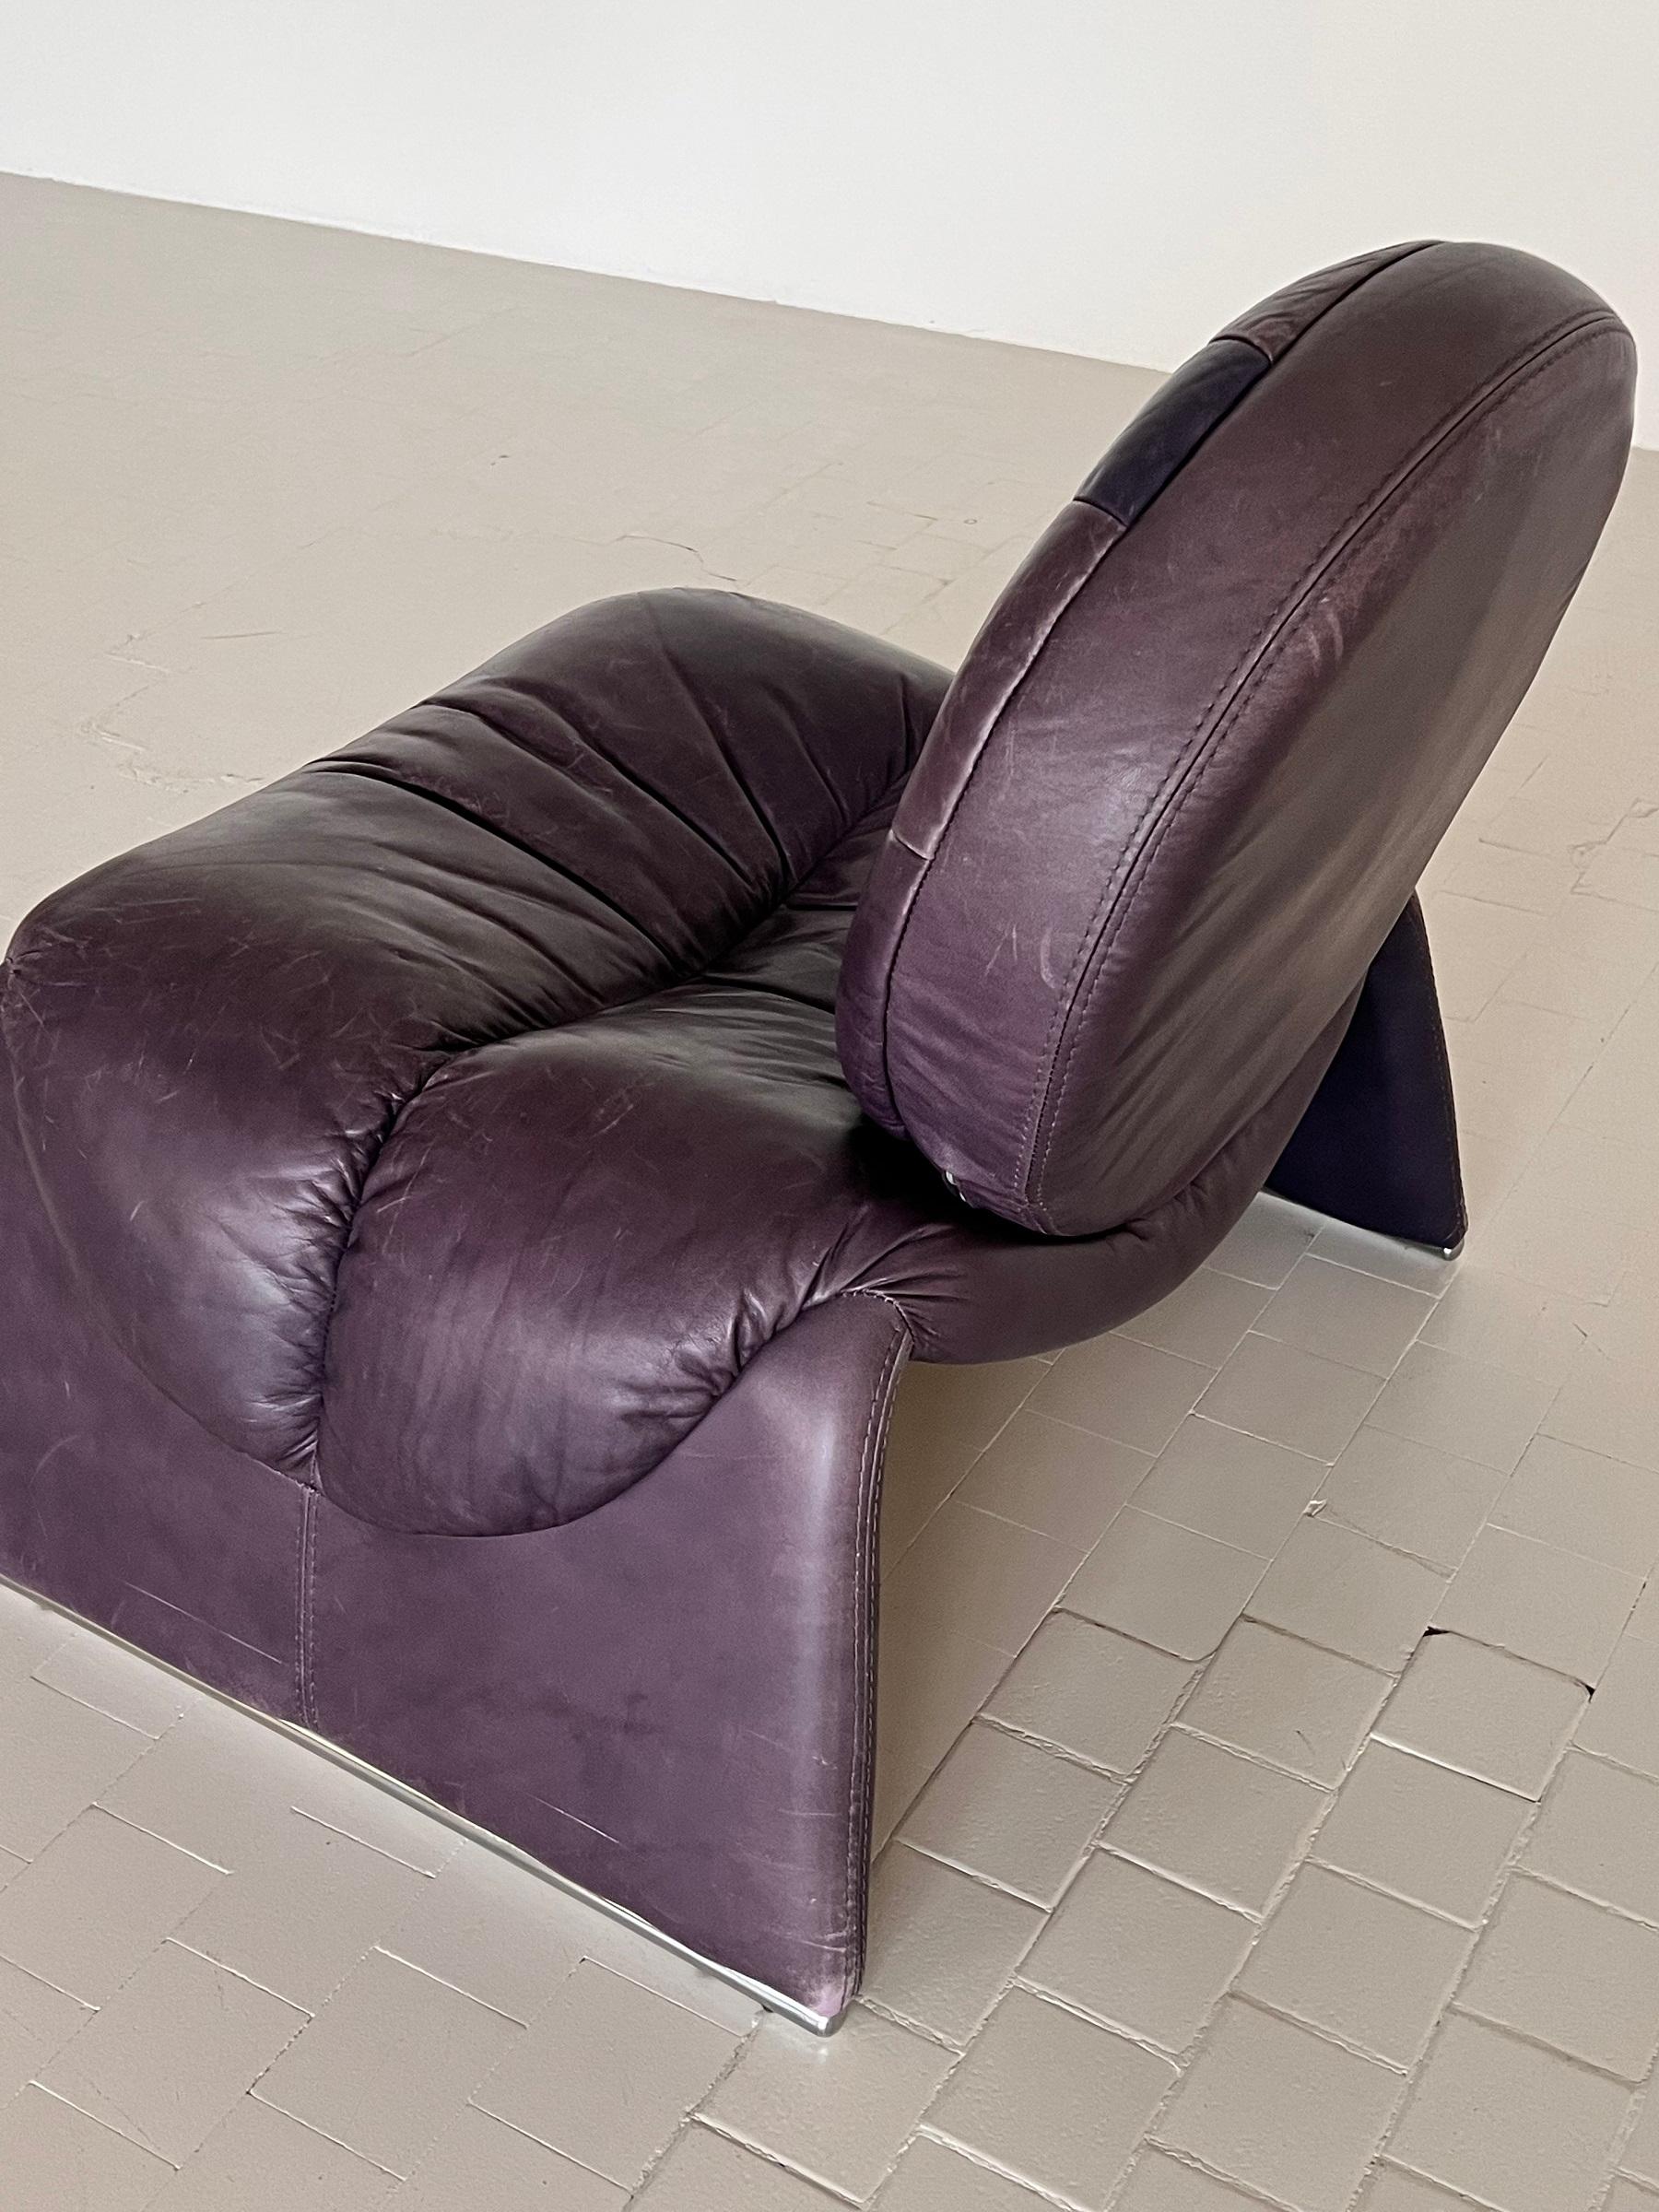 Vittorio Introini Lounge Chair P35 in Purple for Saporiti, 1980s For Sale 7